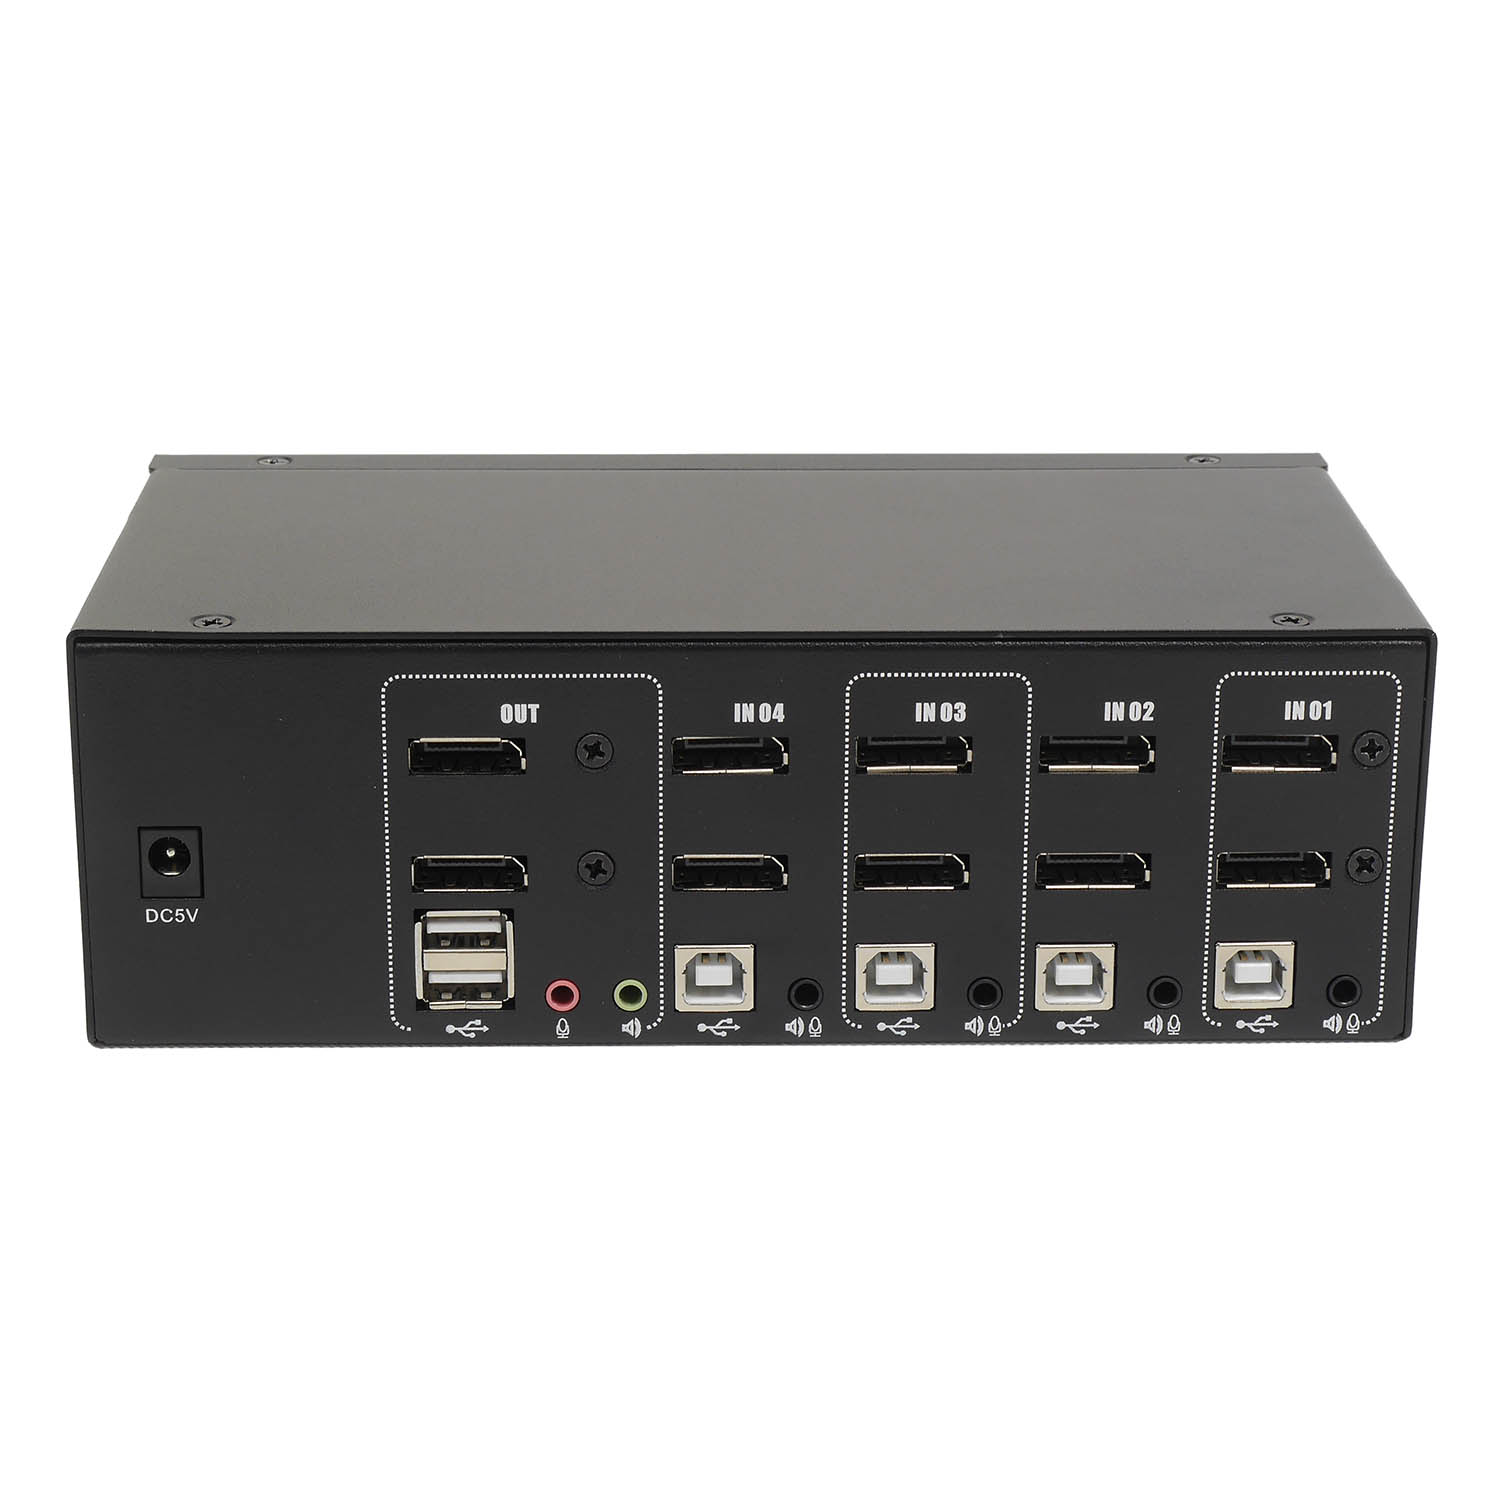 Переключатель KVM 4 порта 2x Display Port, Audio, Microphone, 2xUSB, NR-MA42DP, Negorack